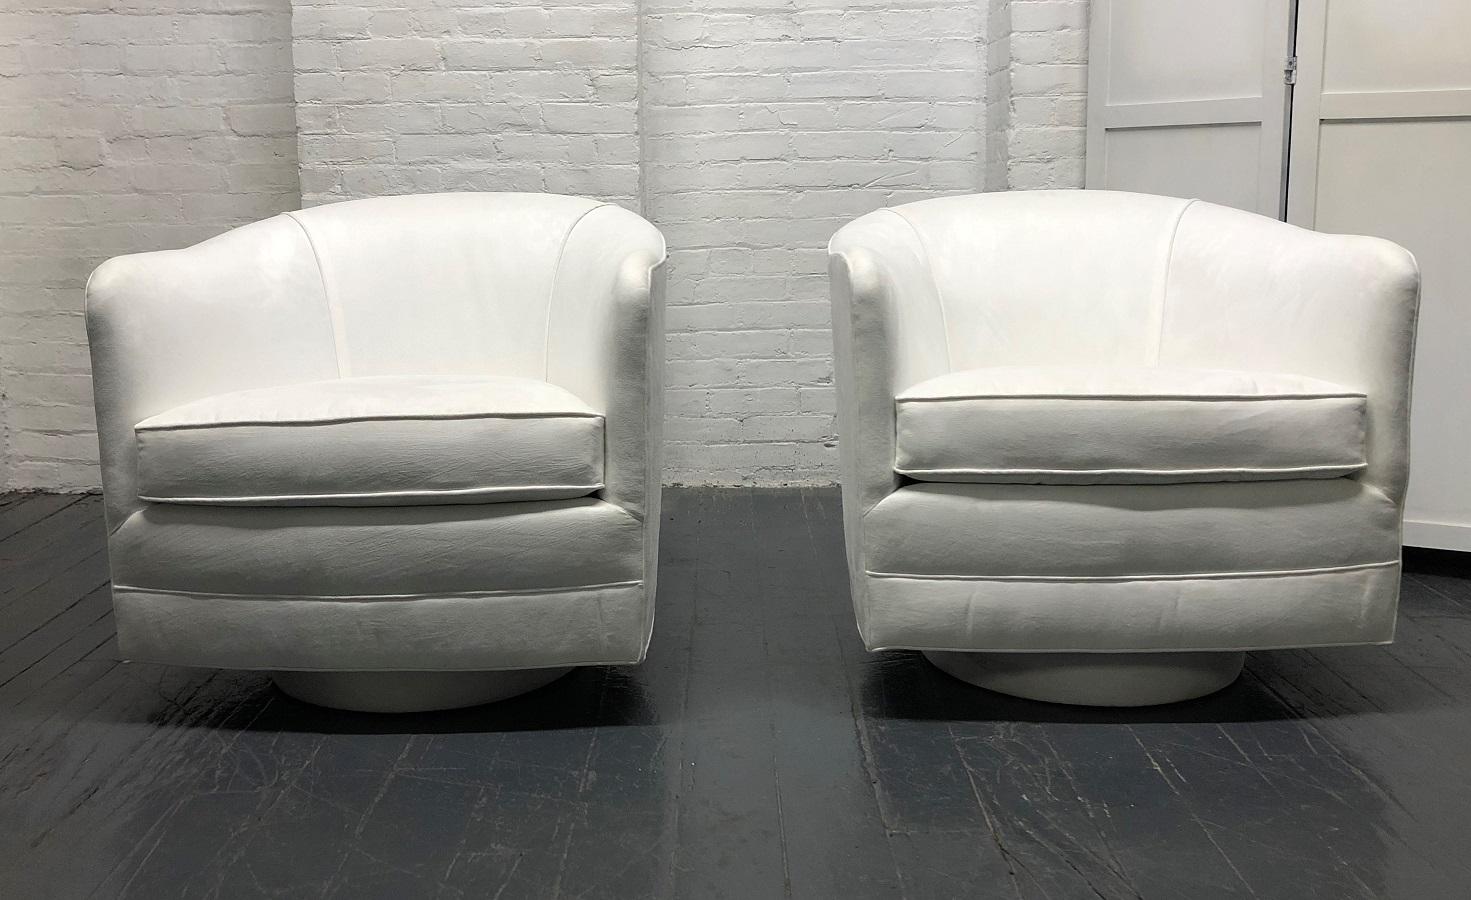 Paire de chaises longues pivotantes de style Milo Baughman. Les chaises pivotent à 360 degrés. Magnifique revêtement en daim ultra blanc pur.